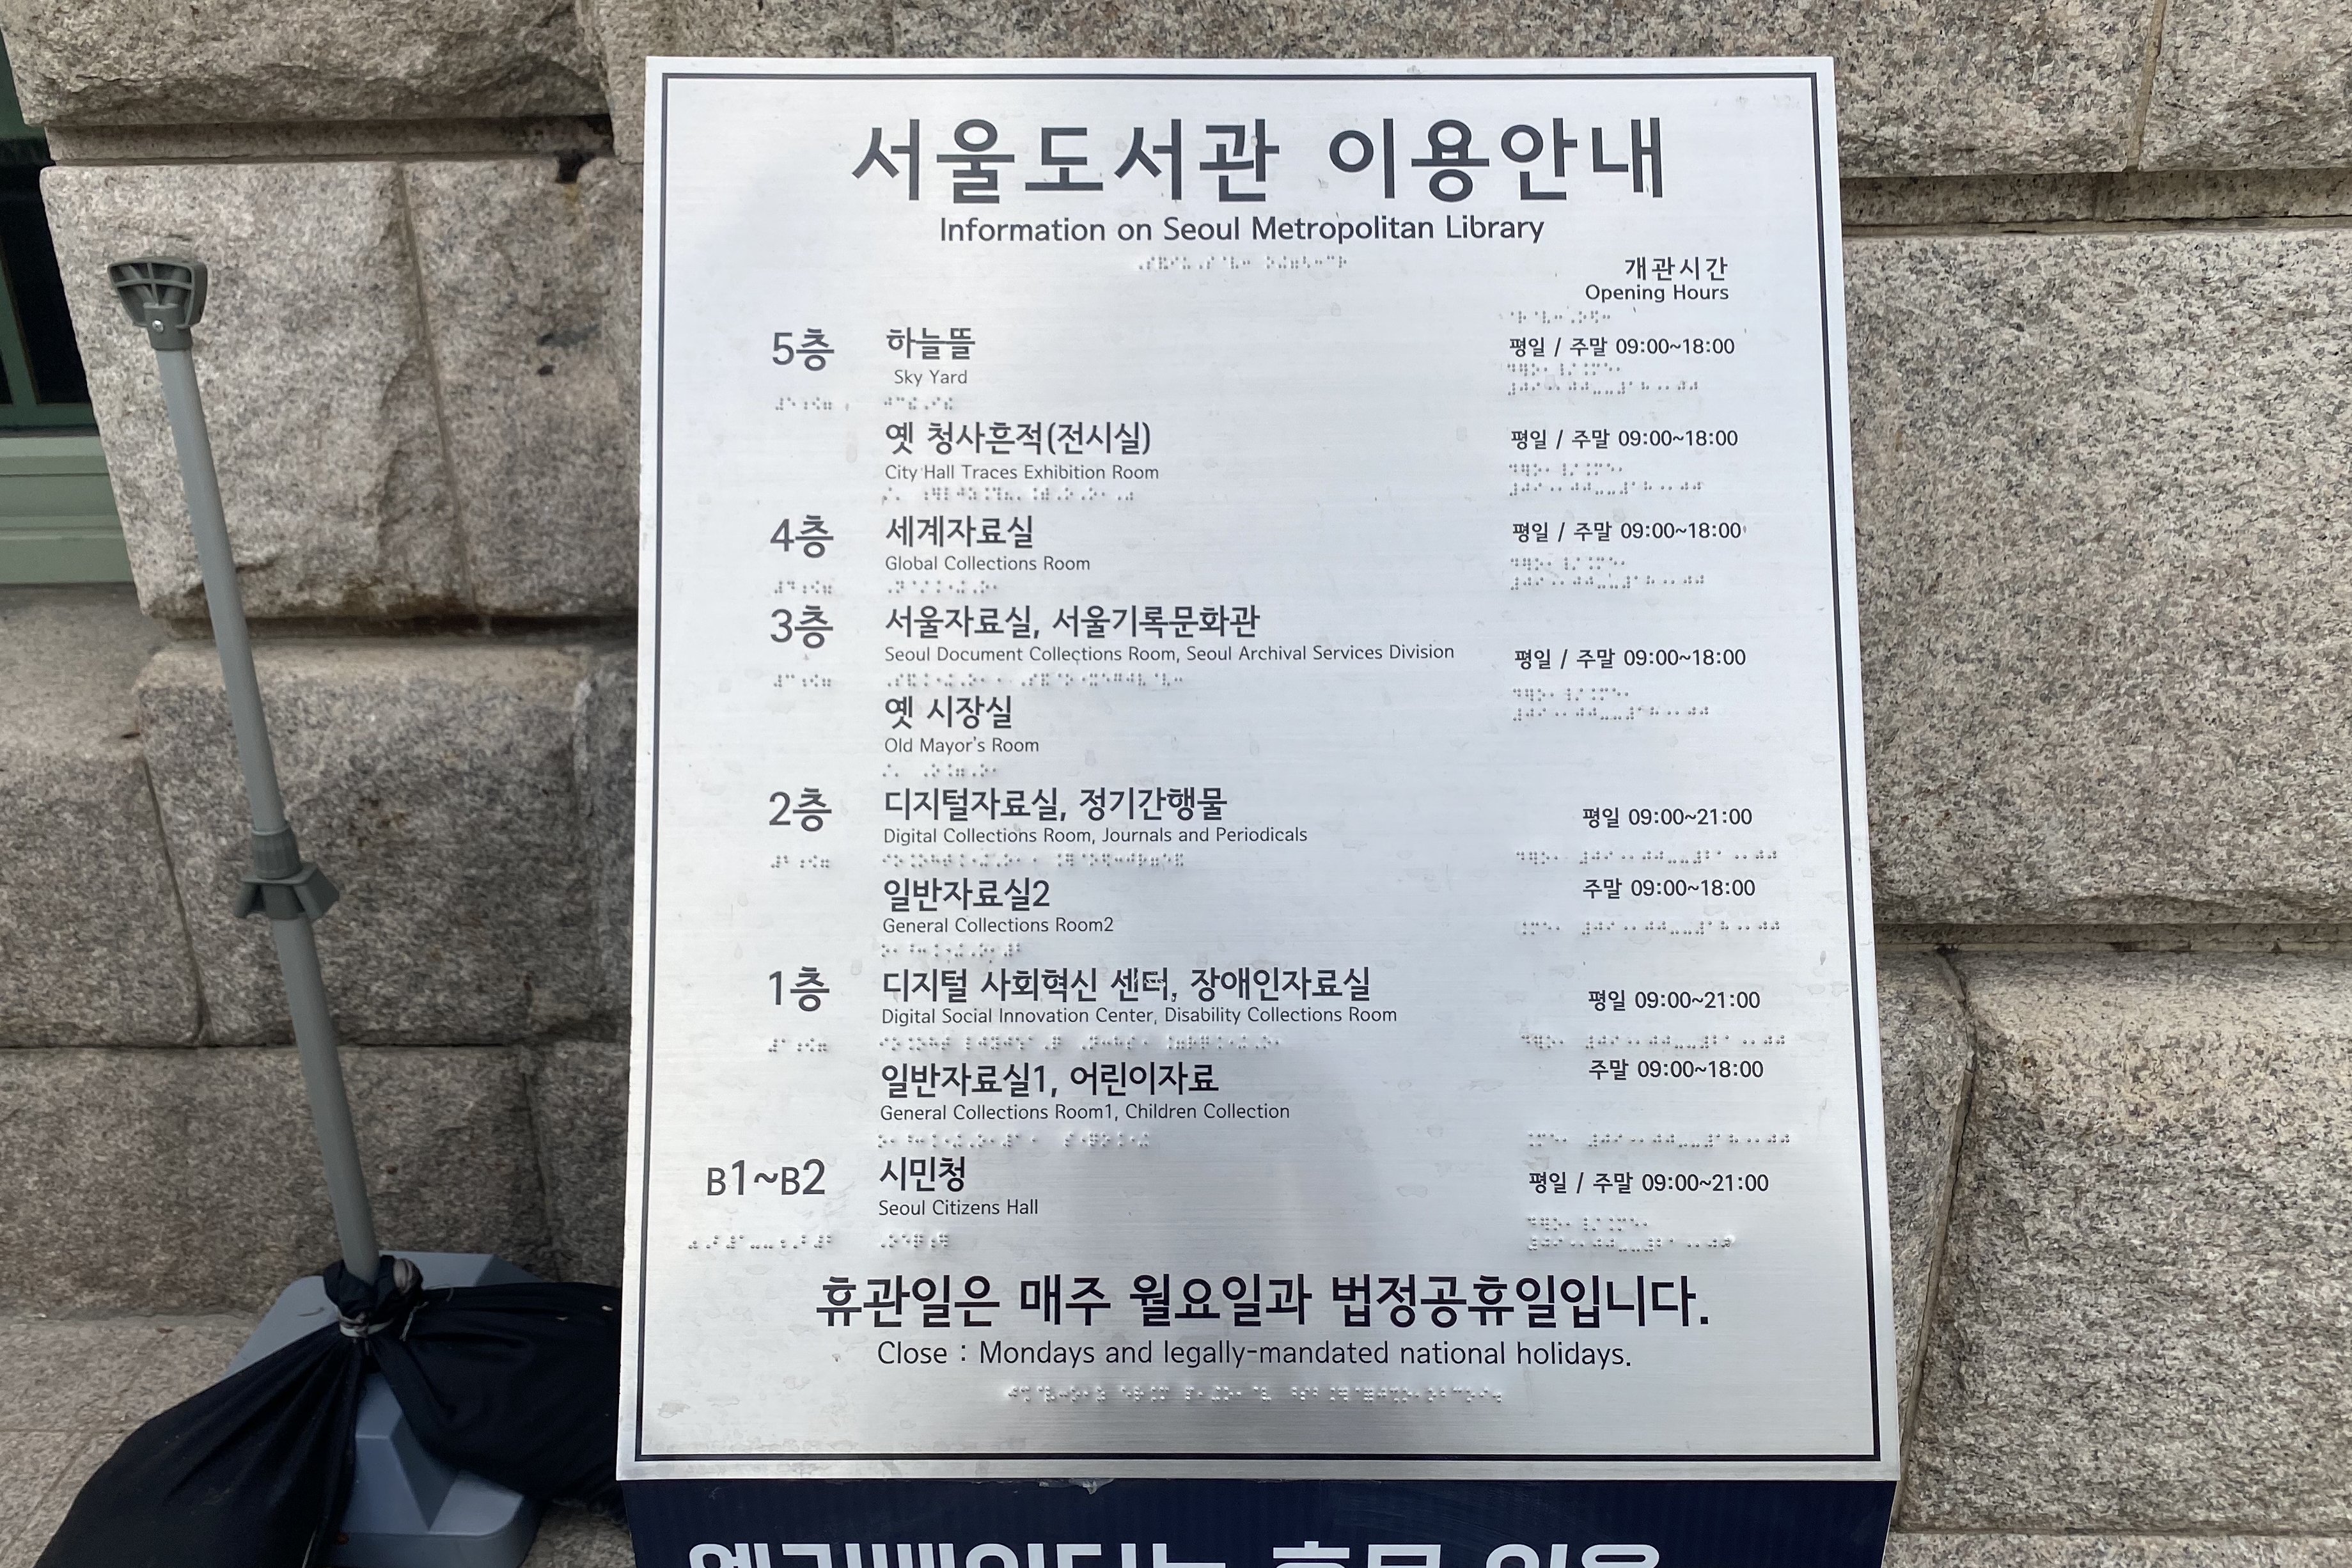 안내판/안내데스크0 : 서울도서관 내 점자로 된 층별 이용안내판